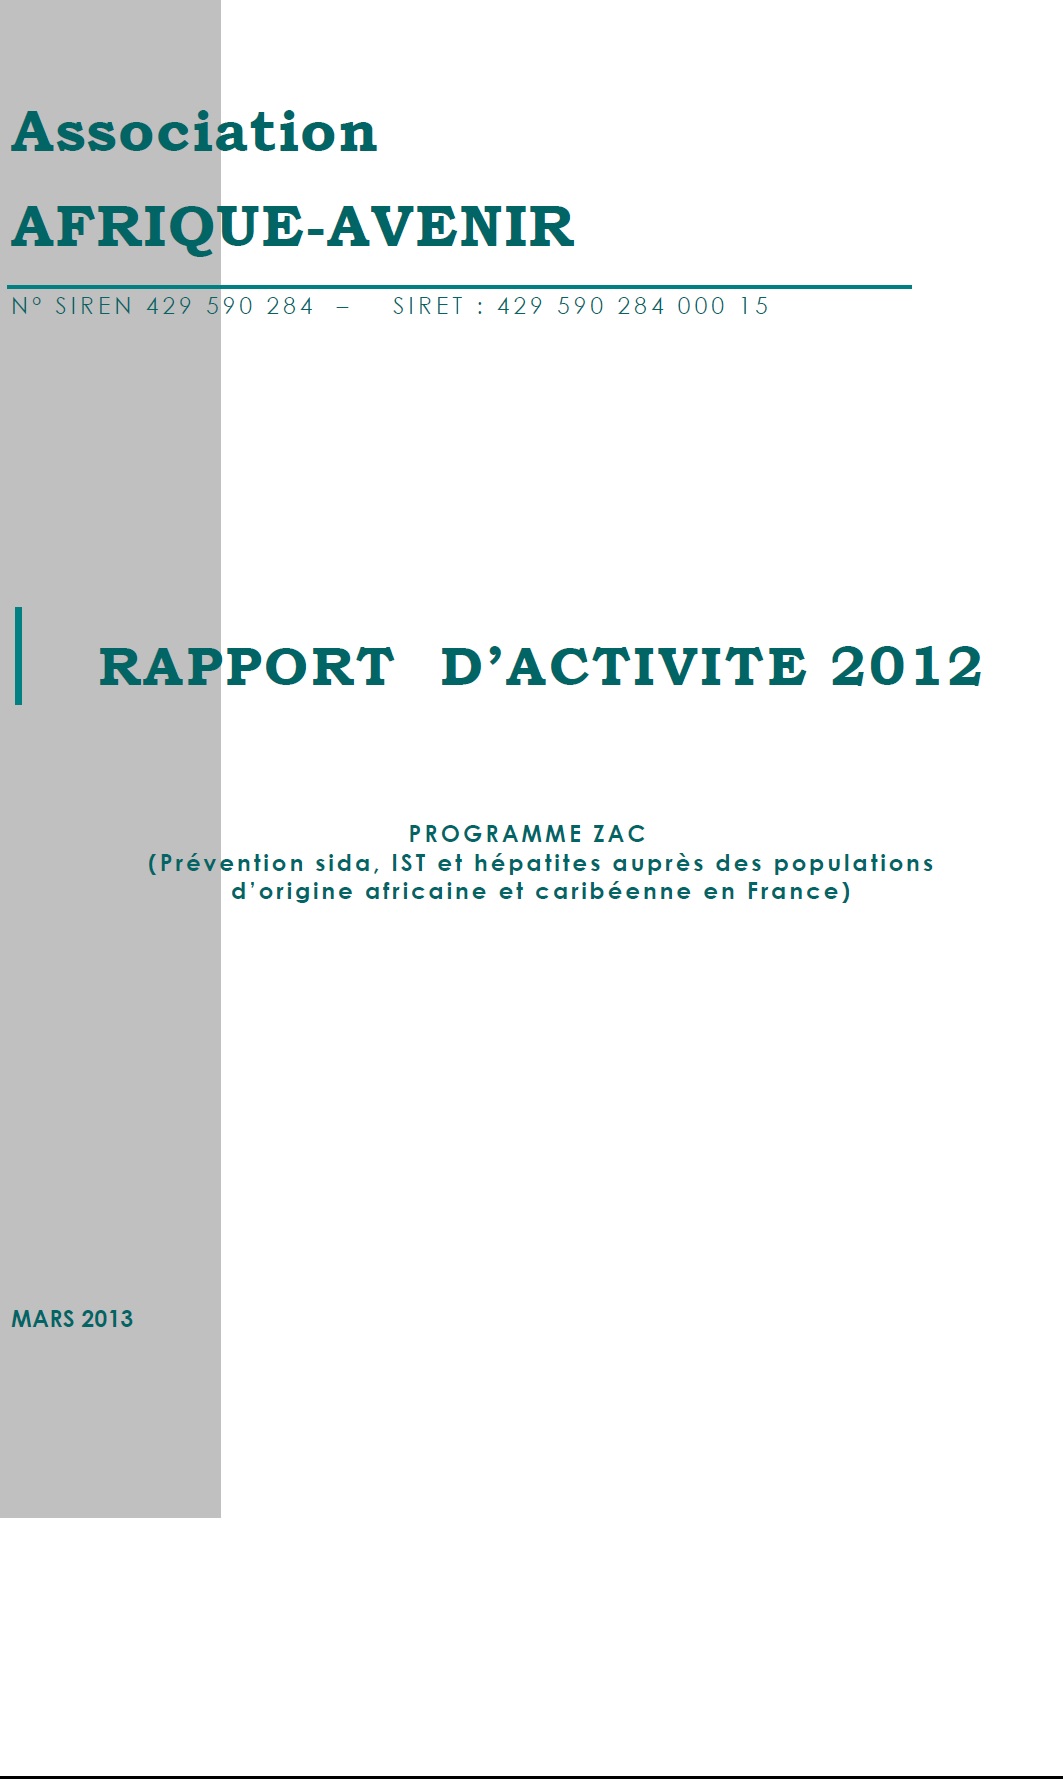 RAPPORT D’ACTIVITE 2012